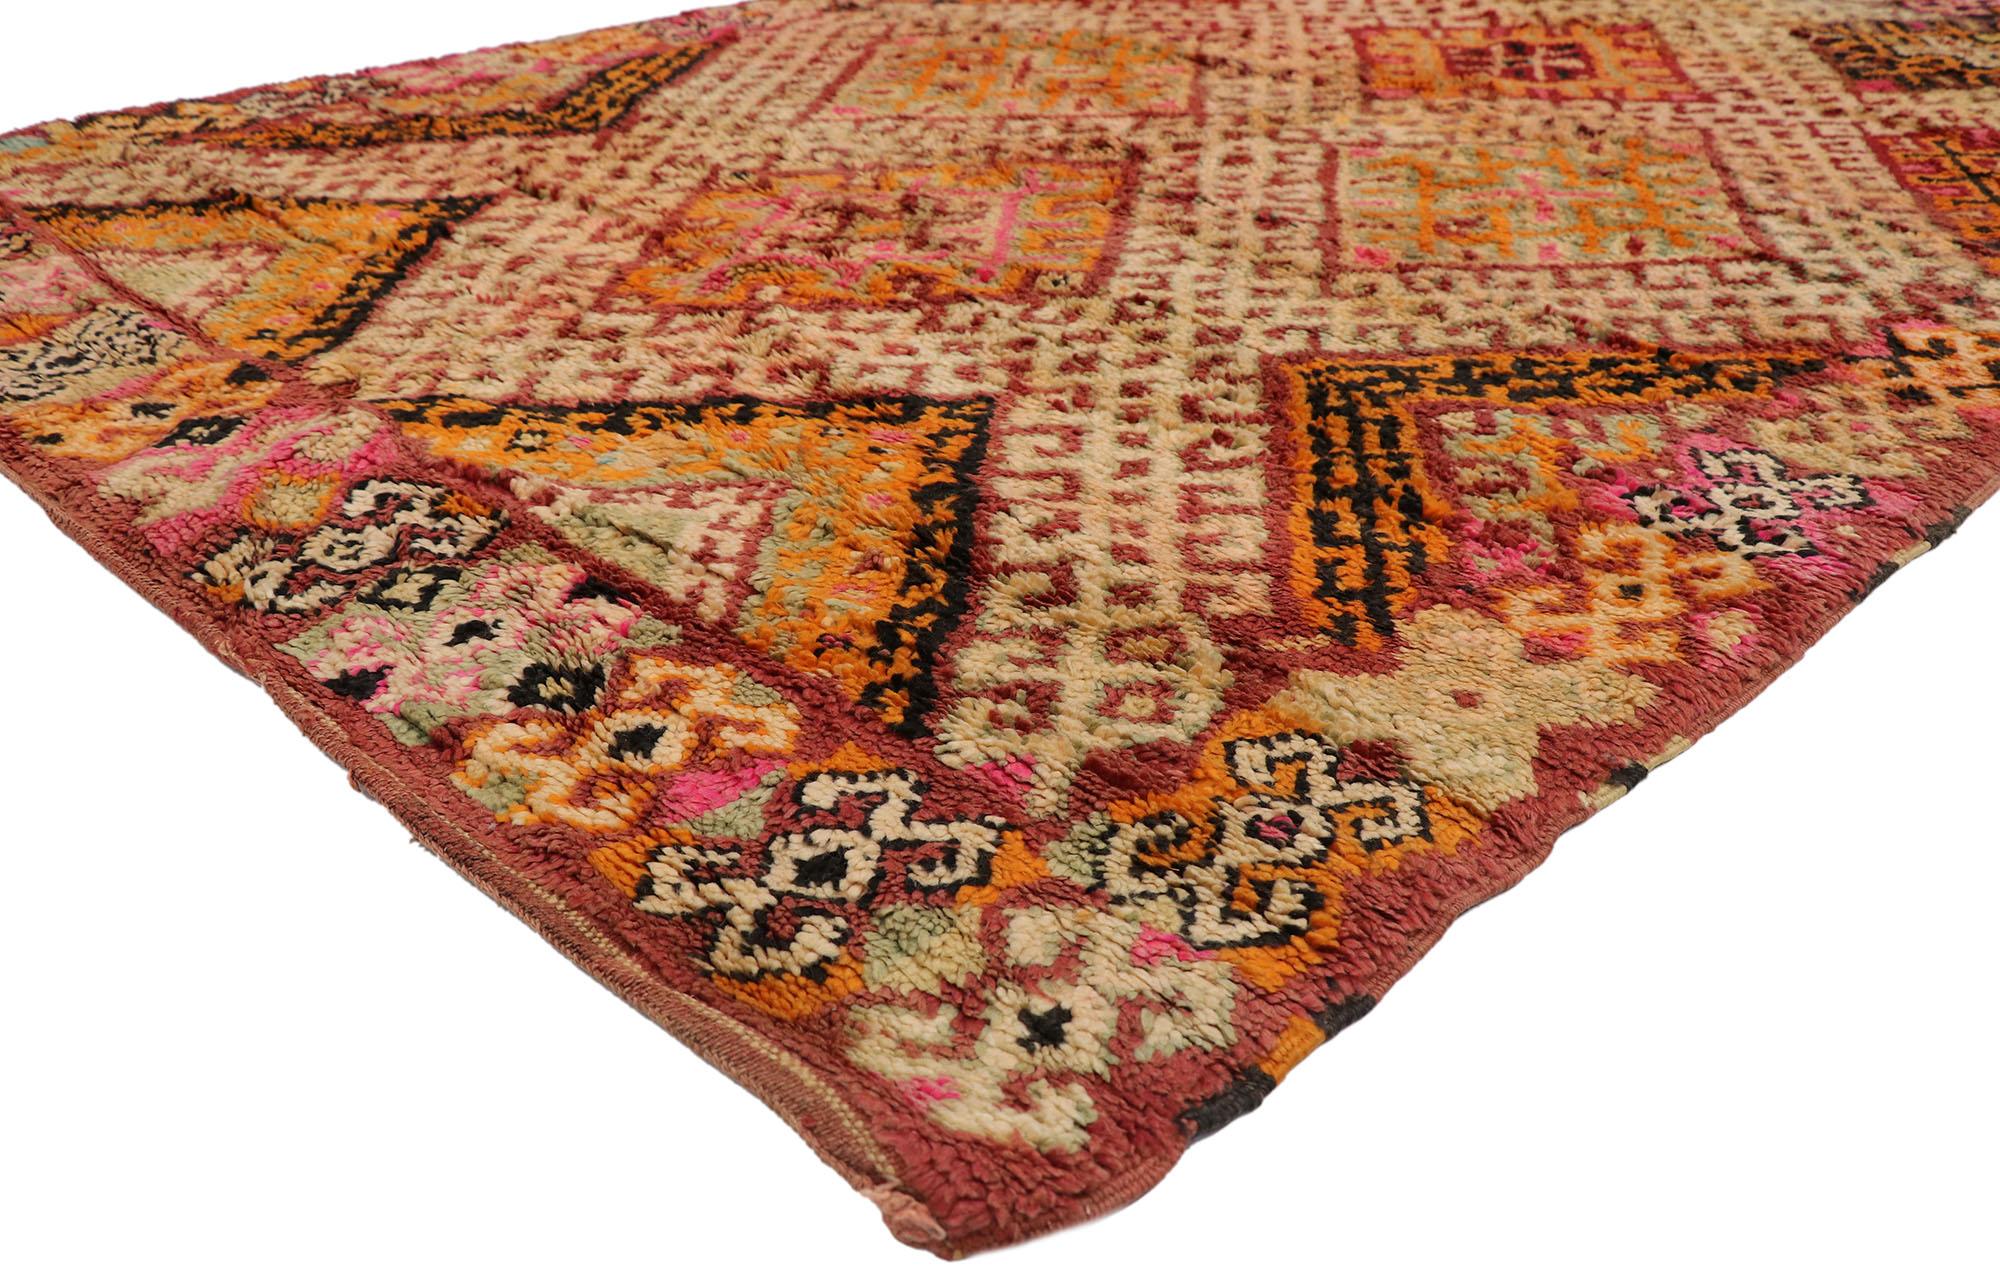 21522 Vintage Beni MGuild Marokkanischer Teppich, 06'03 x 09'04.
Midcentury Modern trifft auf gemütliche Nomaden in diesem handgeknüpften marokkanischen Beni MGuild-Teppich aus Wolle. Das geometrische Design und die kräftigen Erdtöne, die in dieses